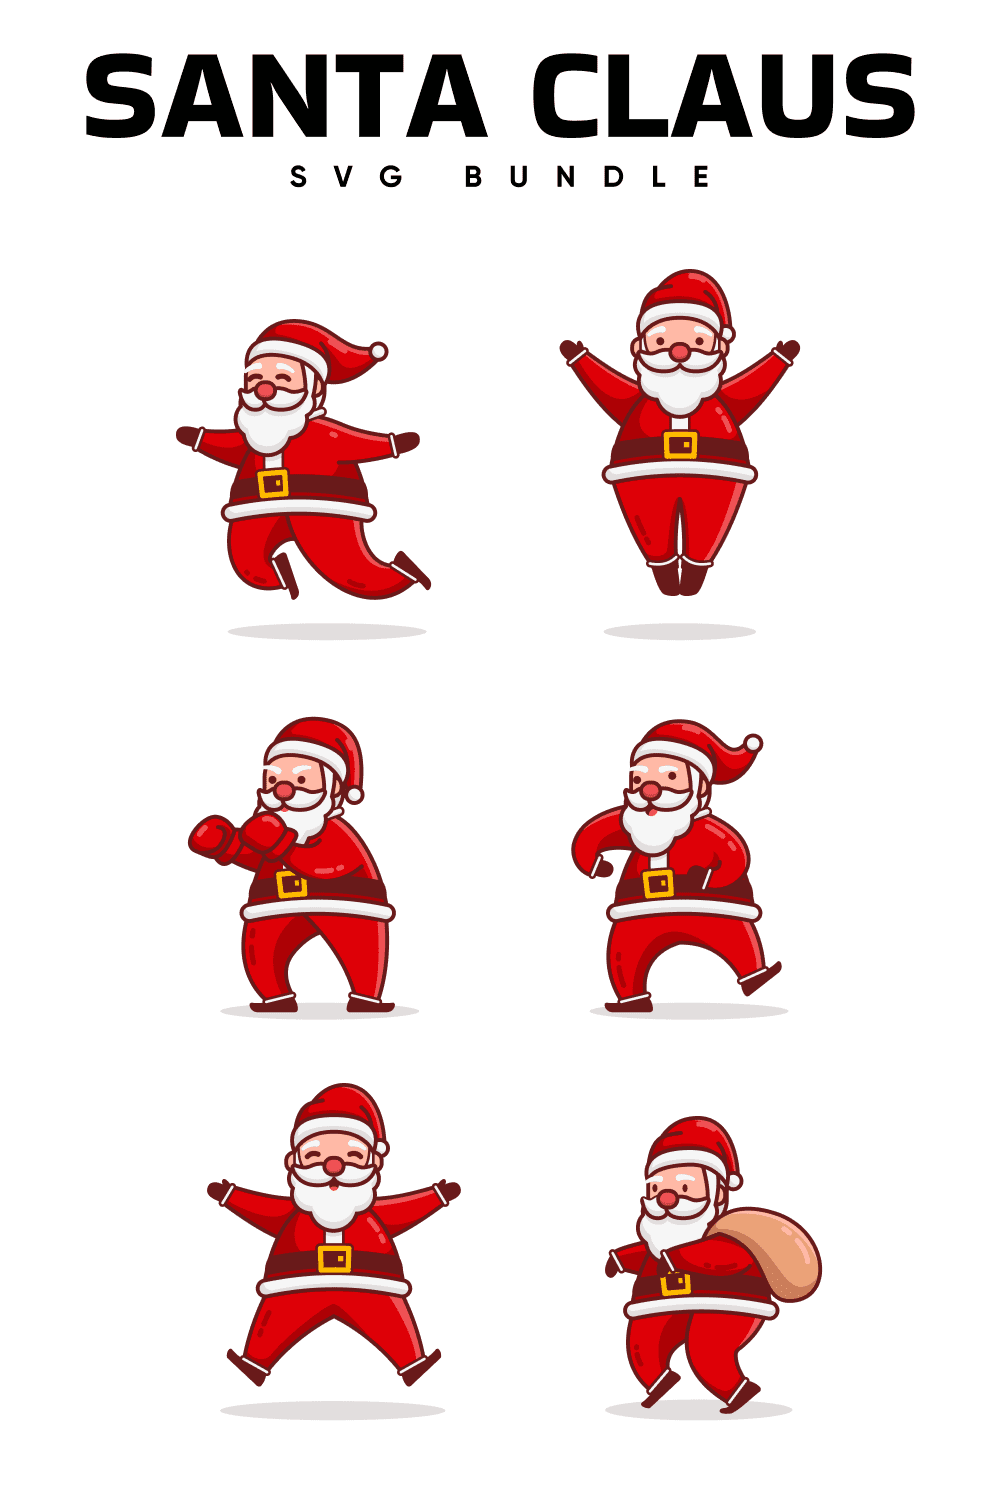 Santa Claus SVG bundle.